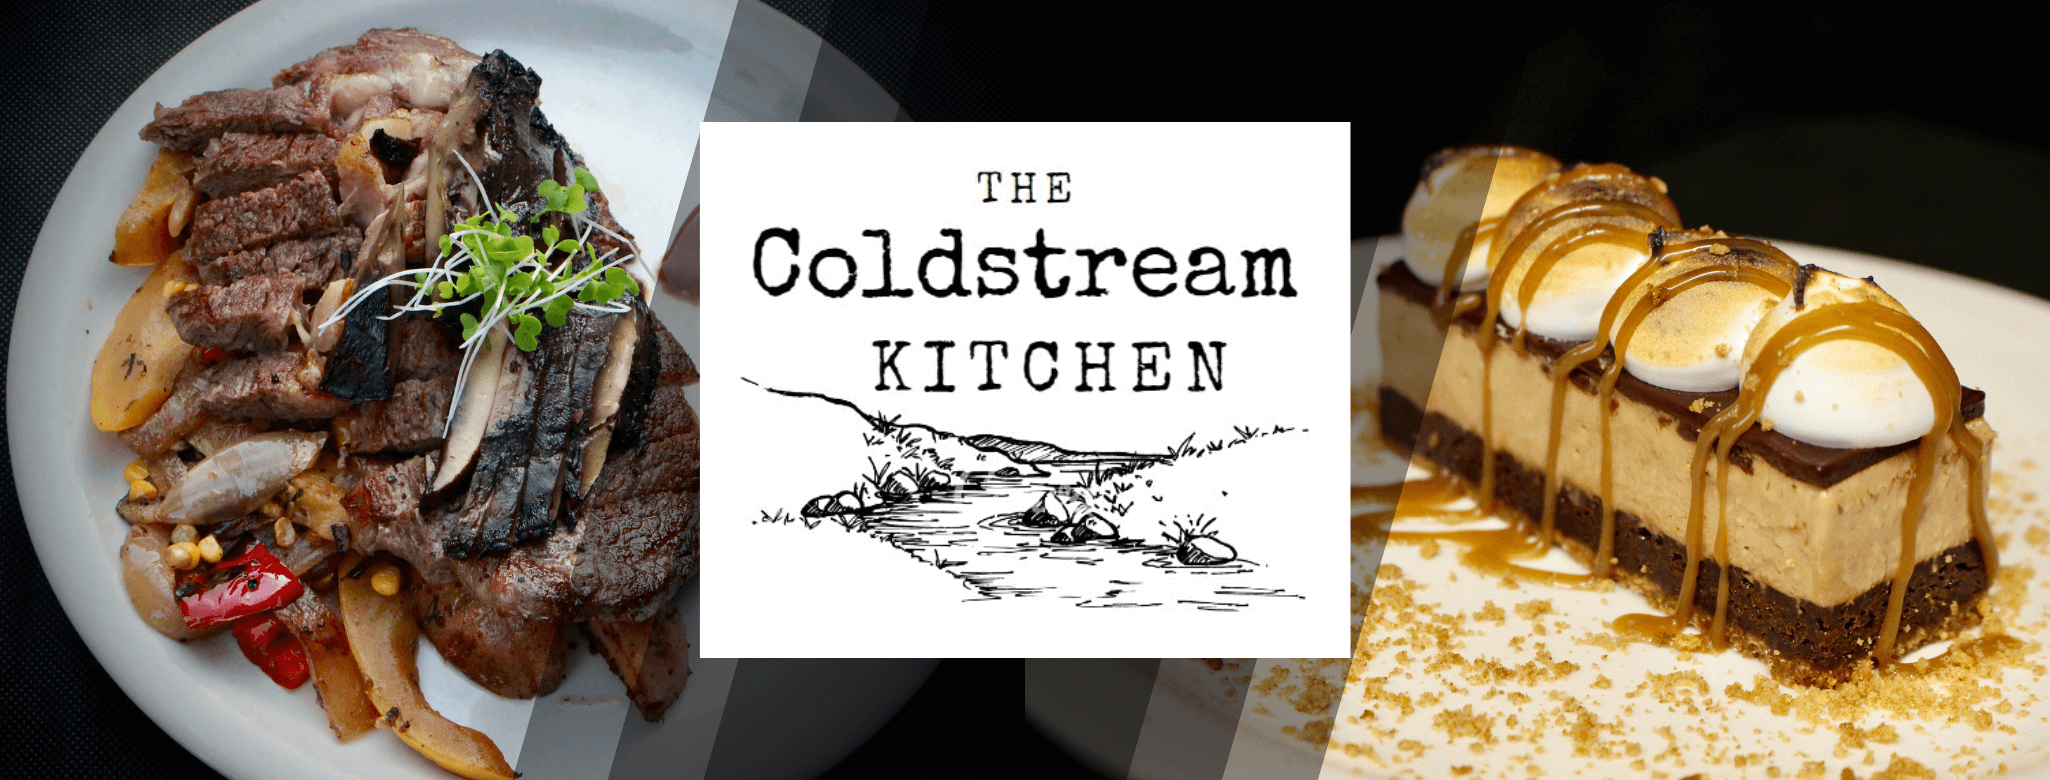 The Coldstream Kitchen is Orwigsburg’s Newest Restaurant